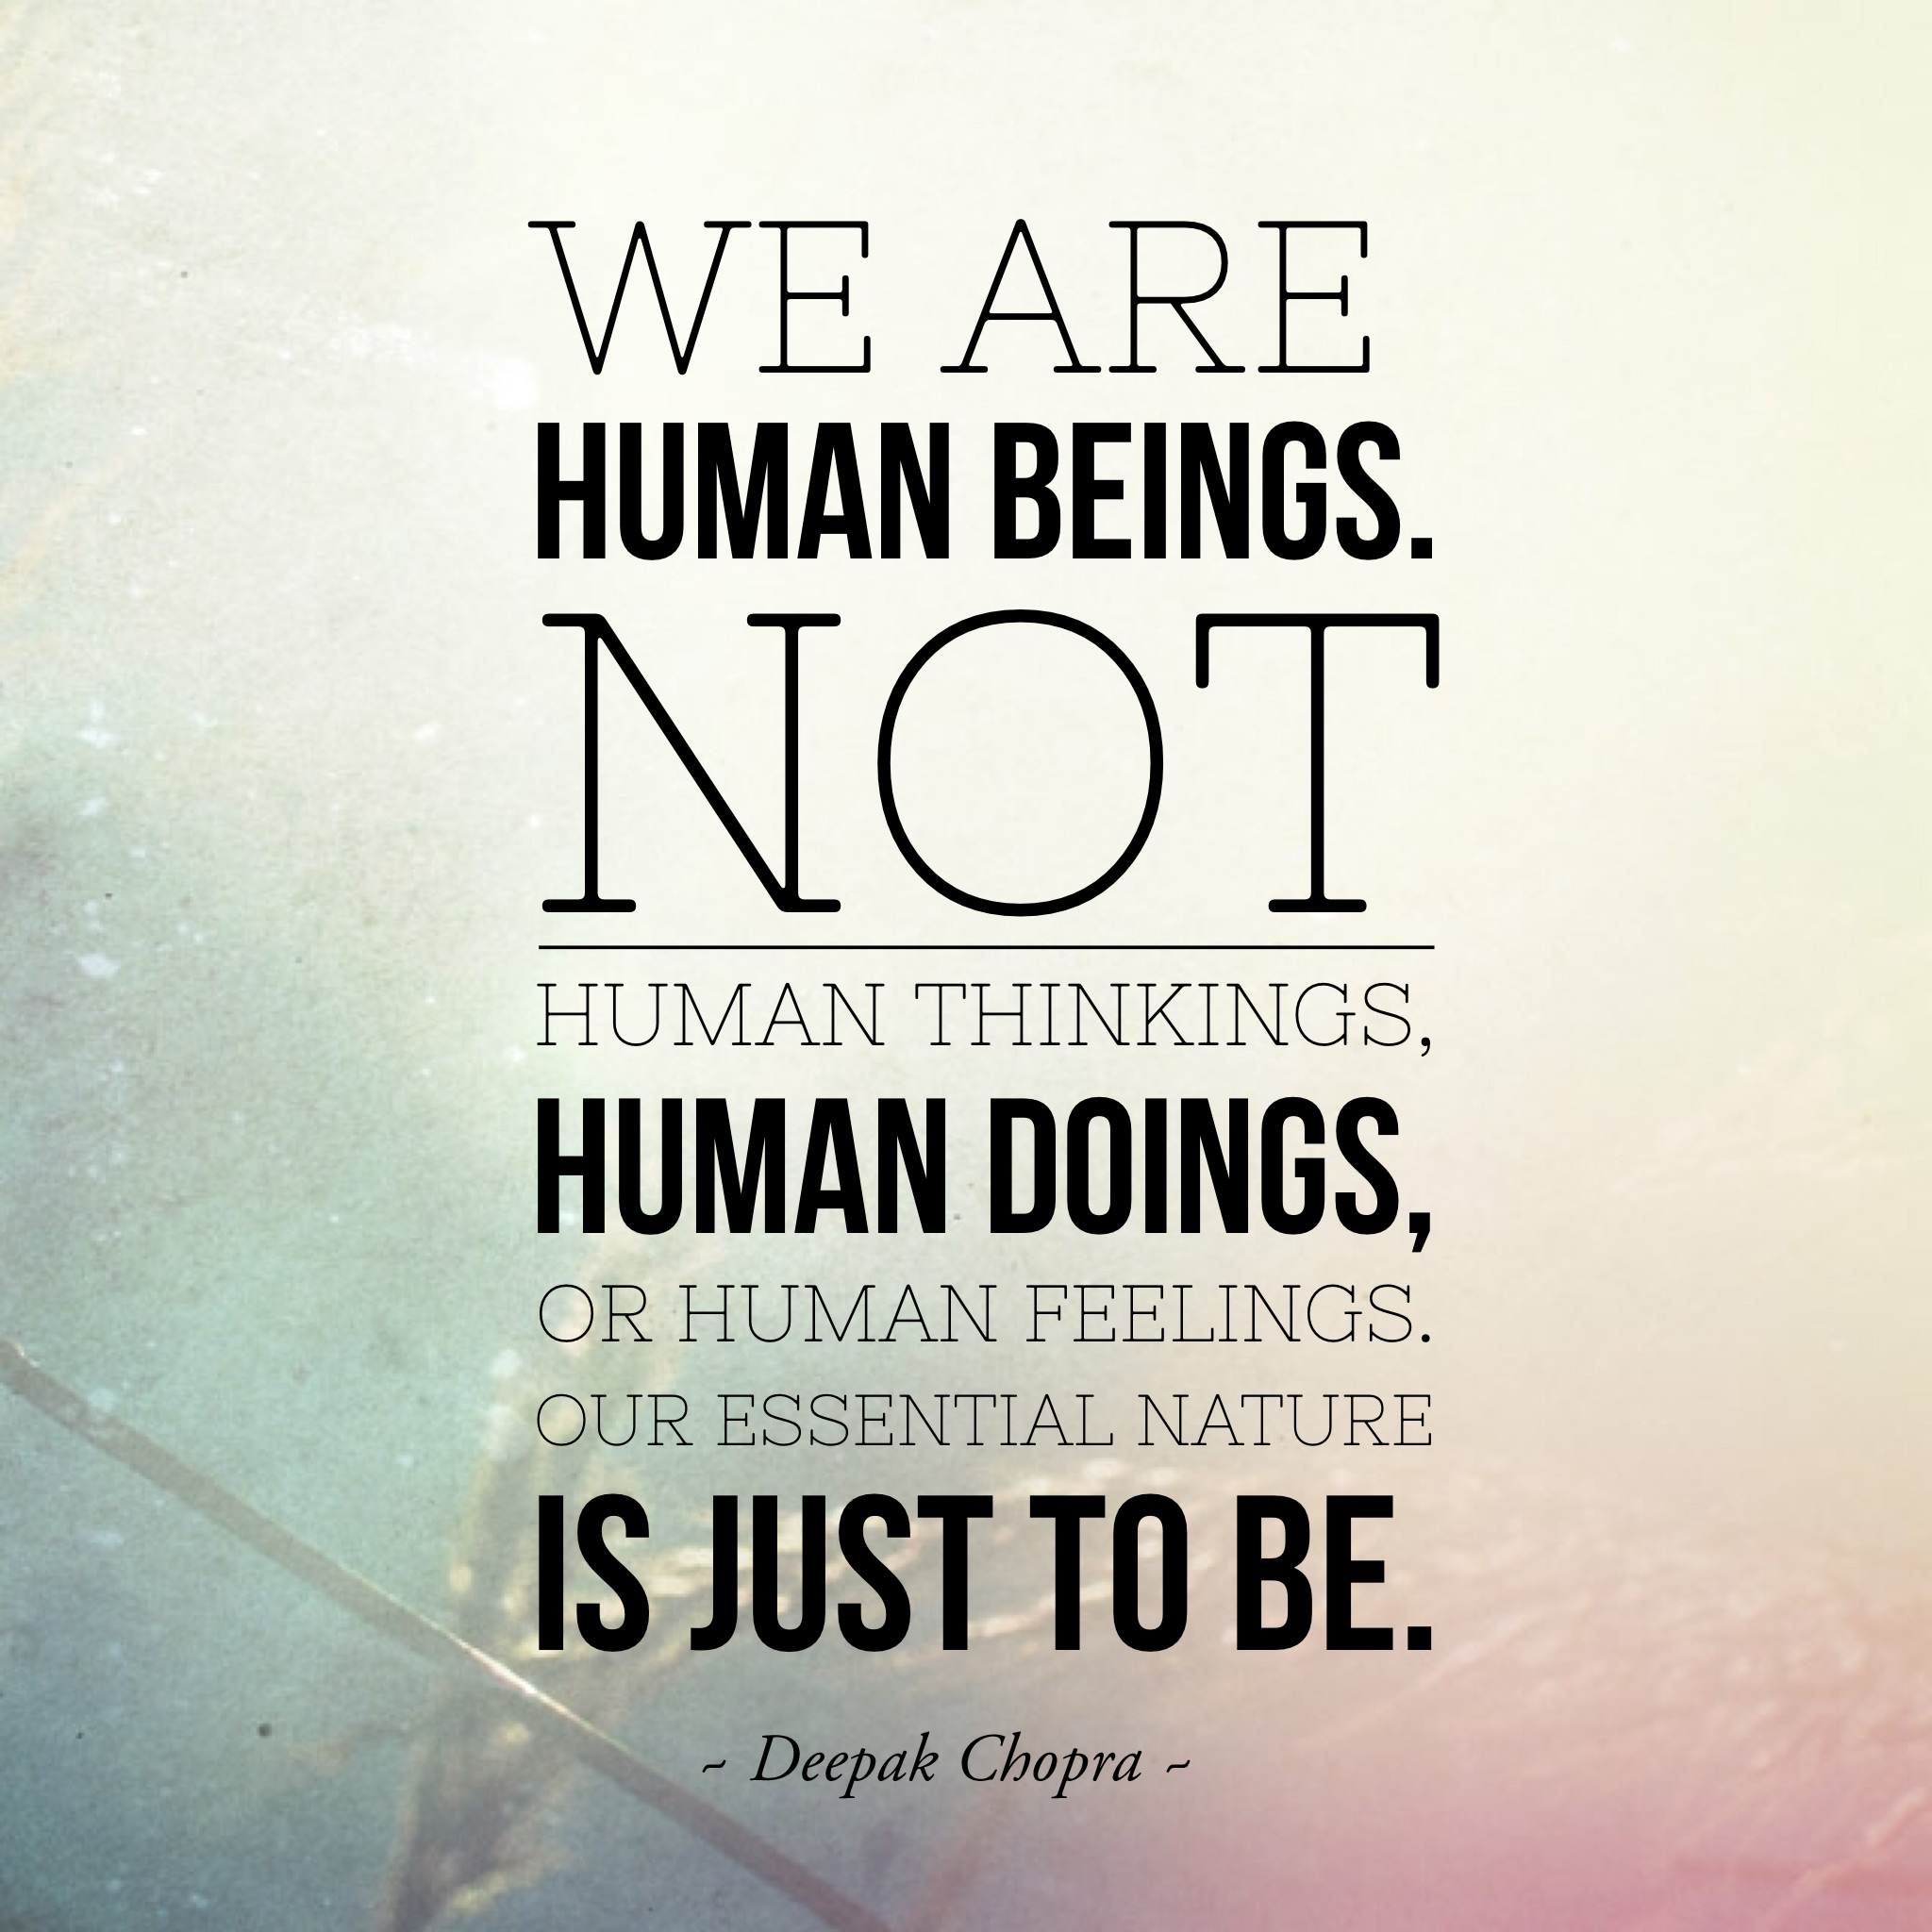 Deepak Chopra on Human Beings